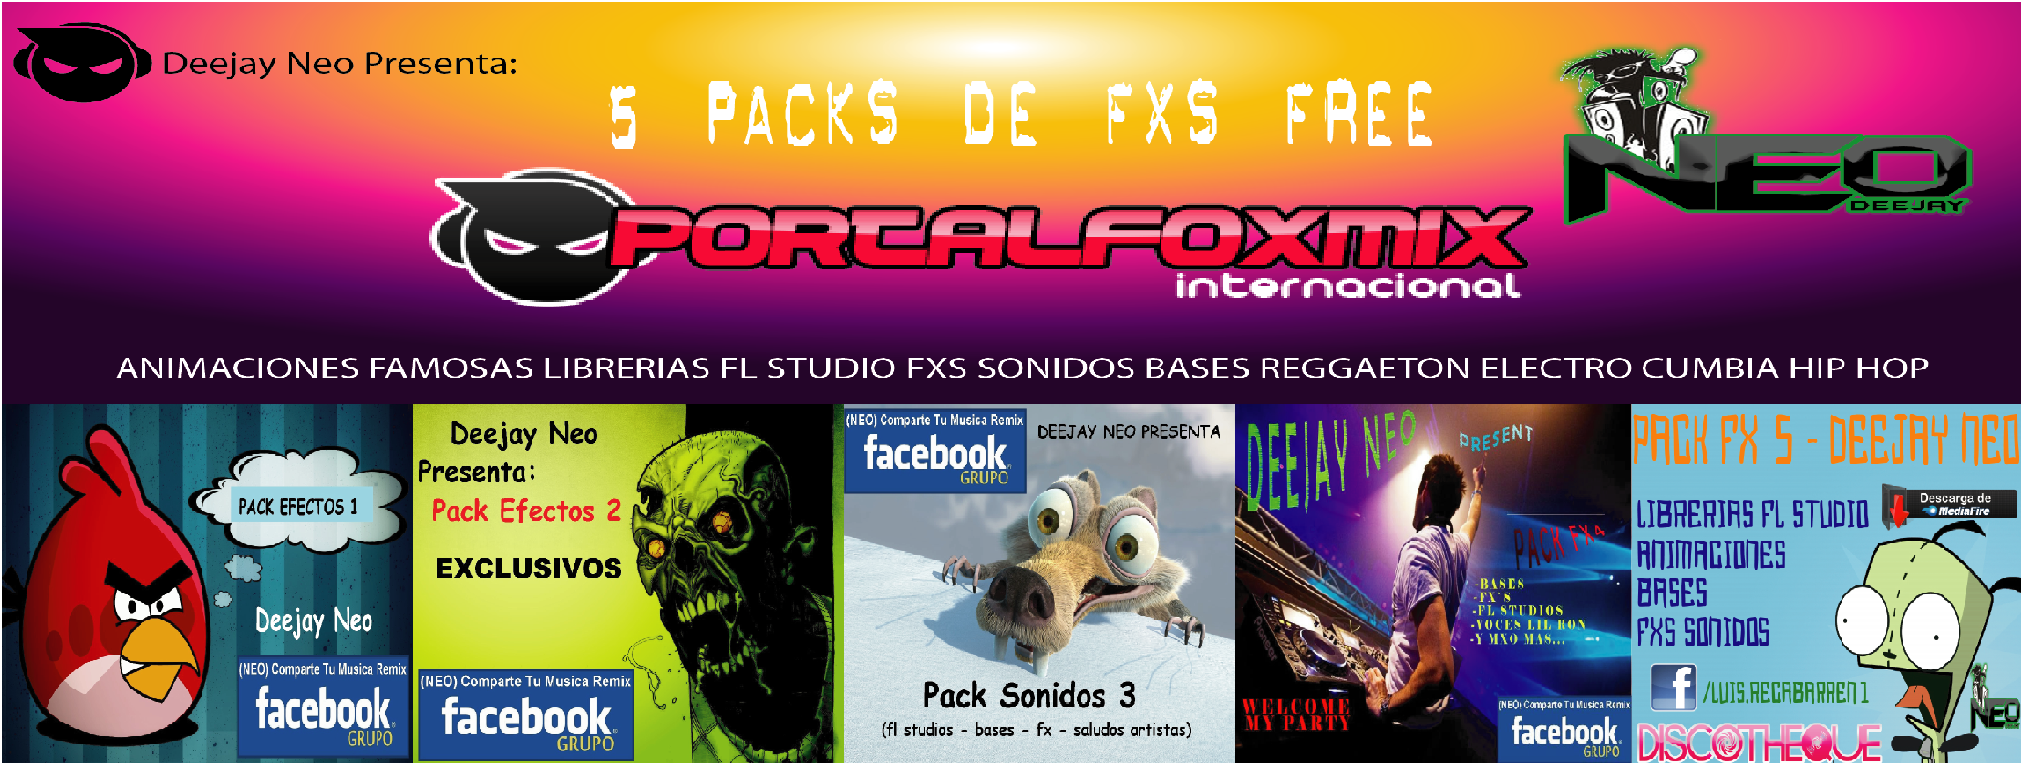 5079: Deejay Neo Luis Recabarren – 5 PACK DE FXS SONIDOS LIBRERIAS ANIMACIONES, ETC. (Exclusivo PortalFoxMix)